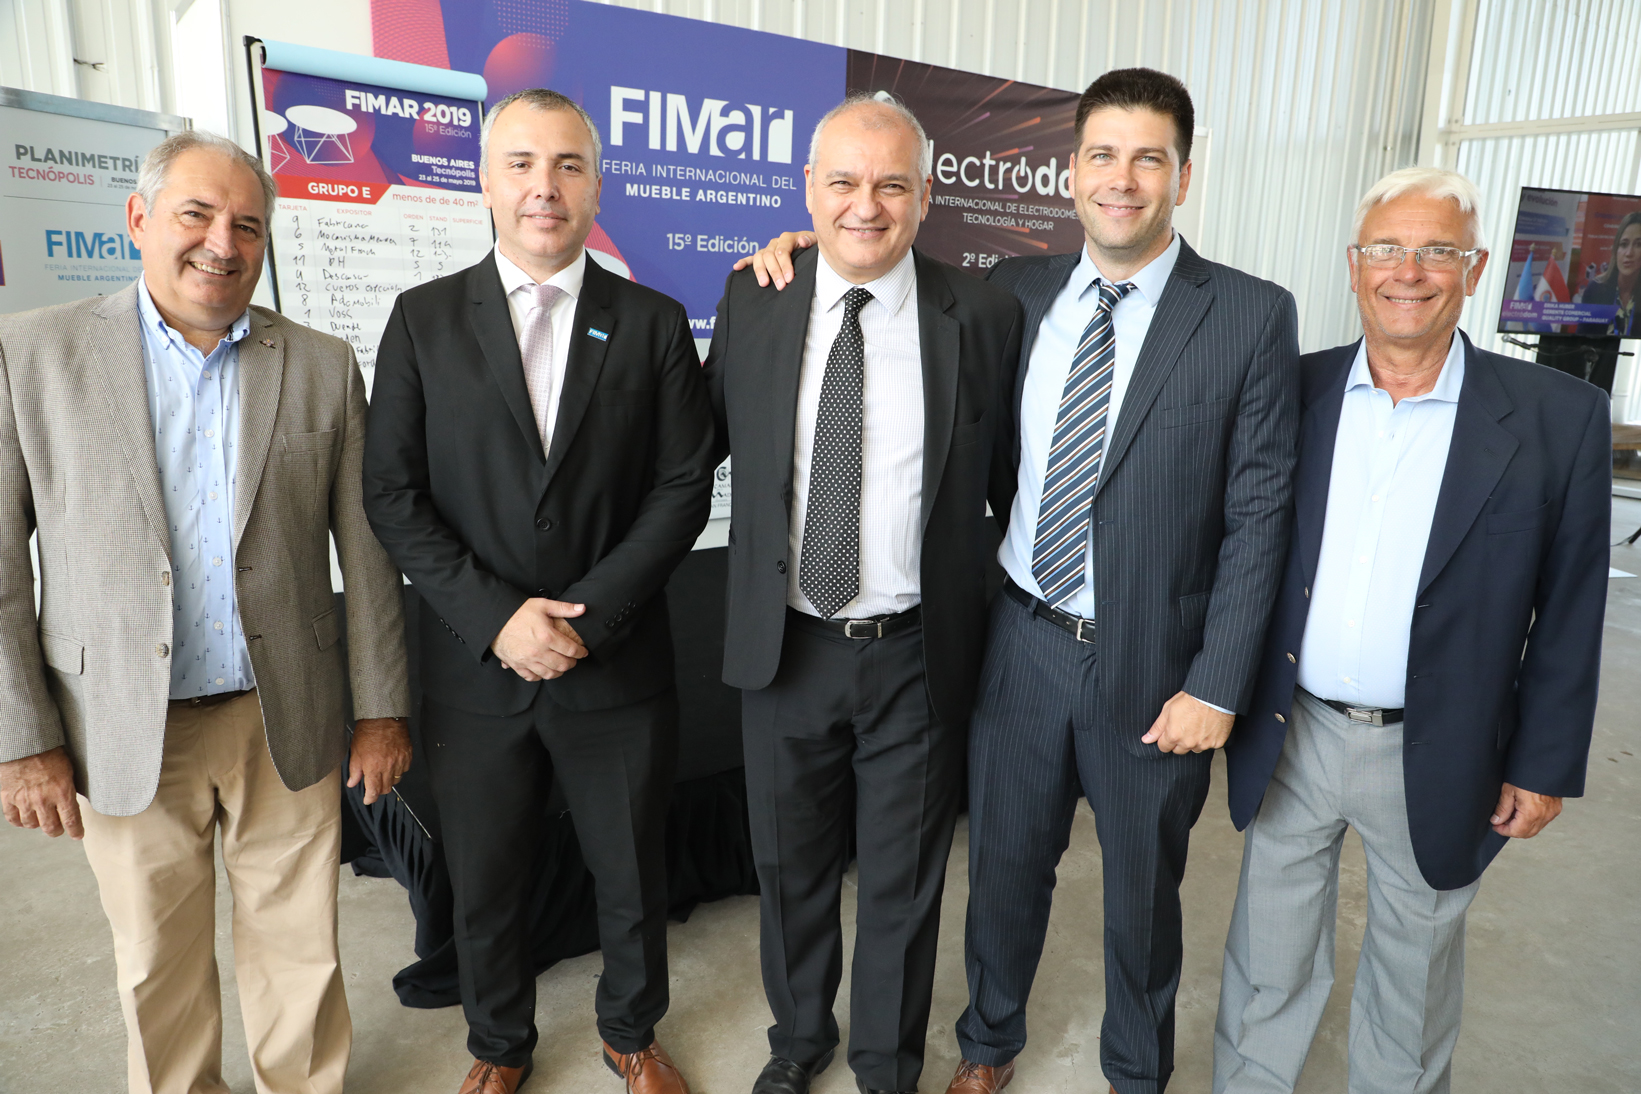 FIMAR+ELECTRODOM convocará a más de cinco mil compradores de la industria